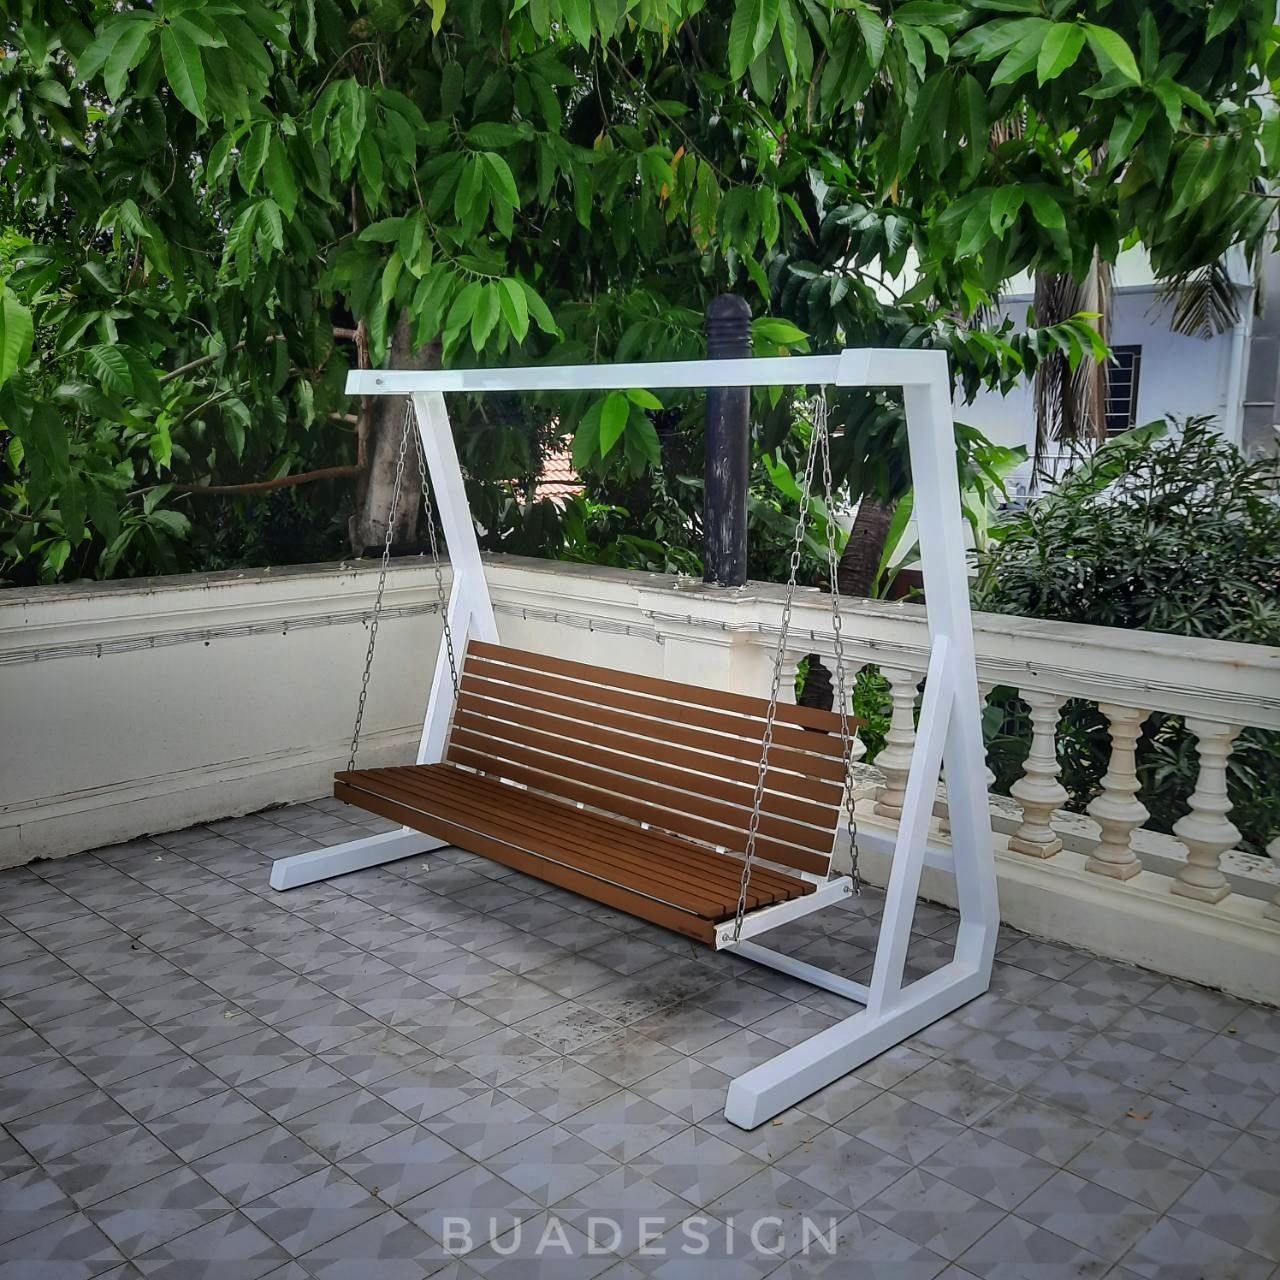 #กระถางไฟเบอร์กลาส #เก้าอี้ไฟเบอร์กลาส #buadesignstudio#outdoorfurniture#outdoorbench#bench#เก้าอี้สนาม#ม้านั่งสนาม#เฟอร์นิเจอร์สนาม#โต๊ะสนาม#เฟอร์นิเจอร์กลางแจ้ง#ชองช้าสนาม